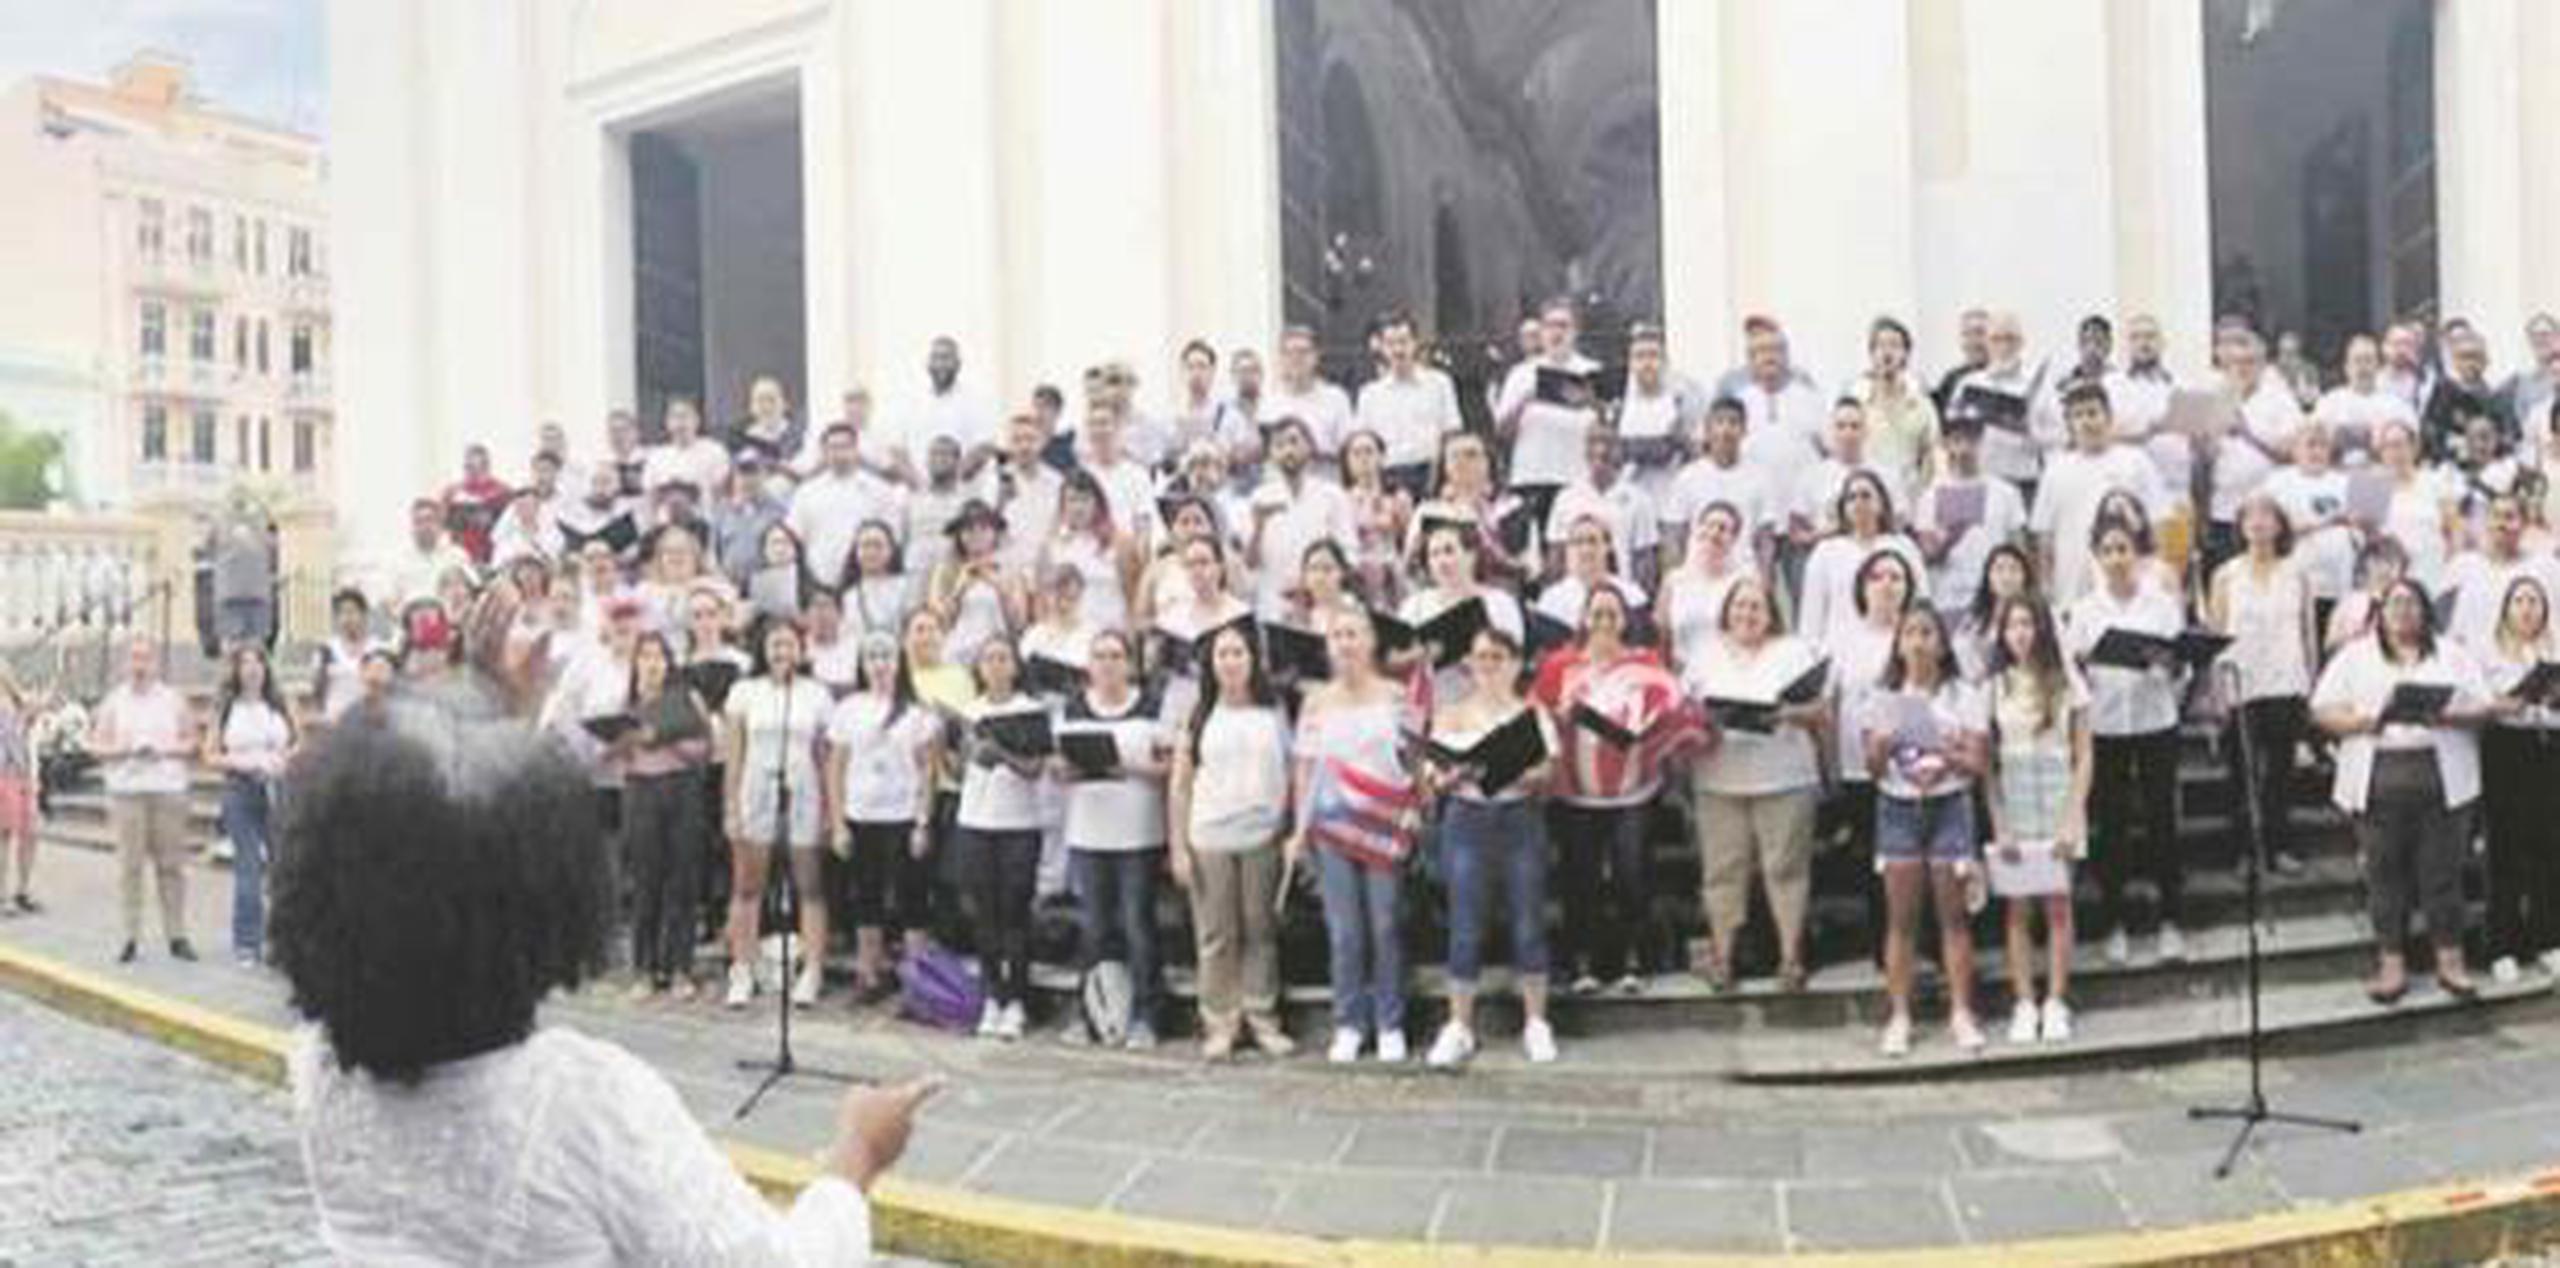 Ponce se considera como una de las ciudades con la mayor cantidad de coros. (Suministrada)